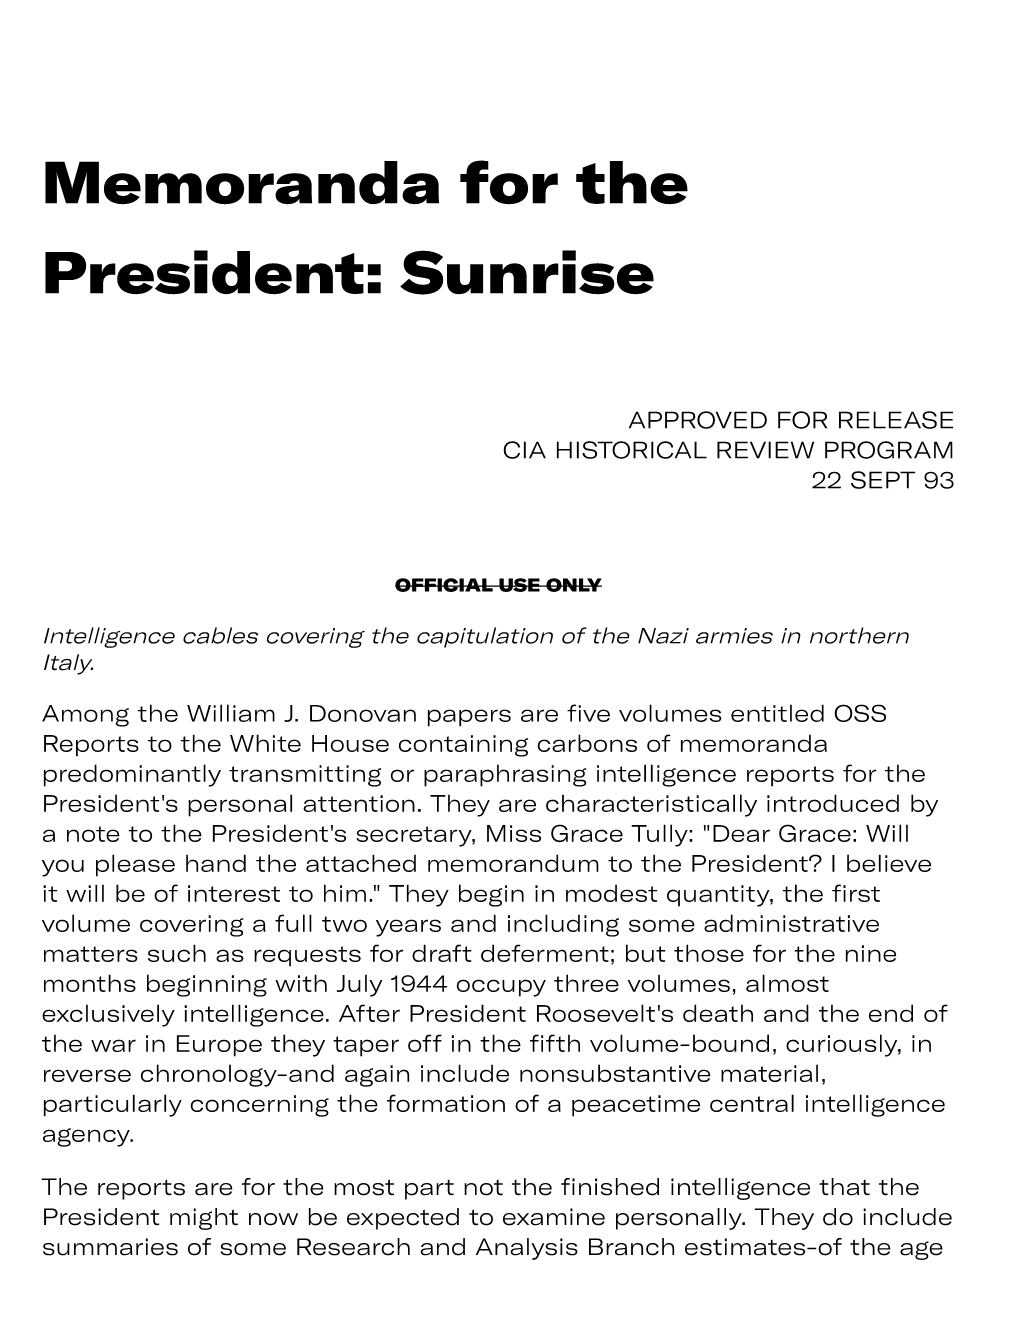 Memoranda for the President: Sunrise